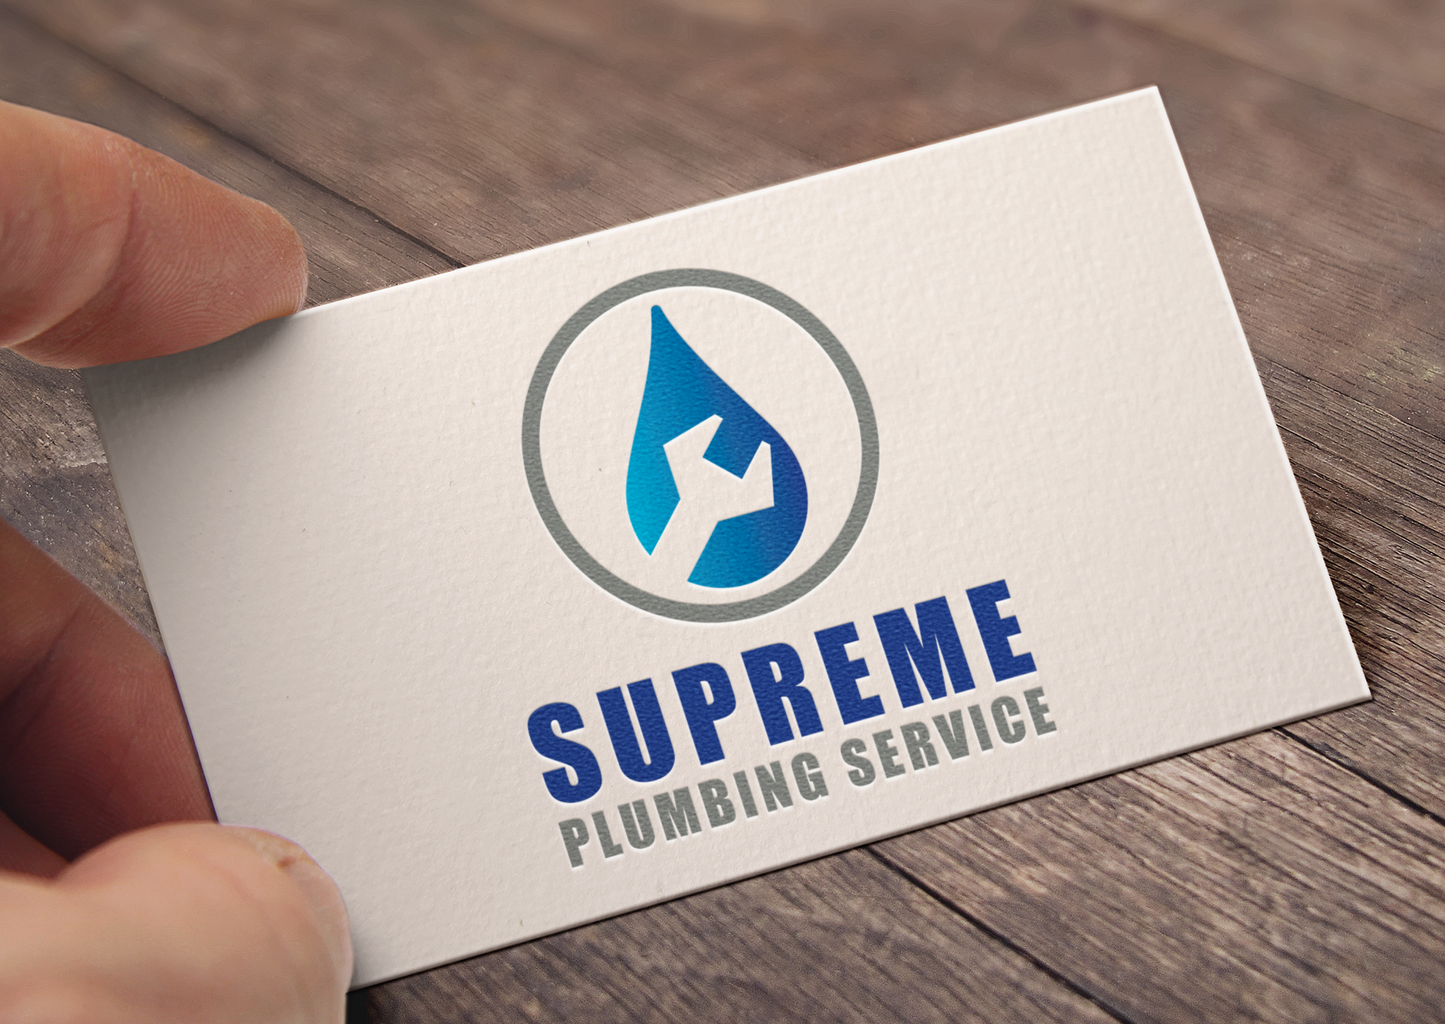 Logotipo de servicios de plomería | Diseño de logotipos | Marca de fontanero | Diseño de gota de agua | Llave | Diseño de fontanero | Servicios de manitas